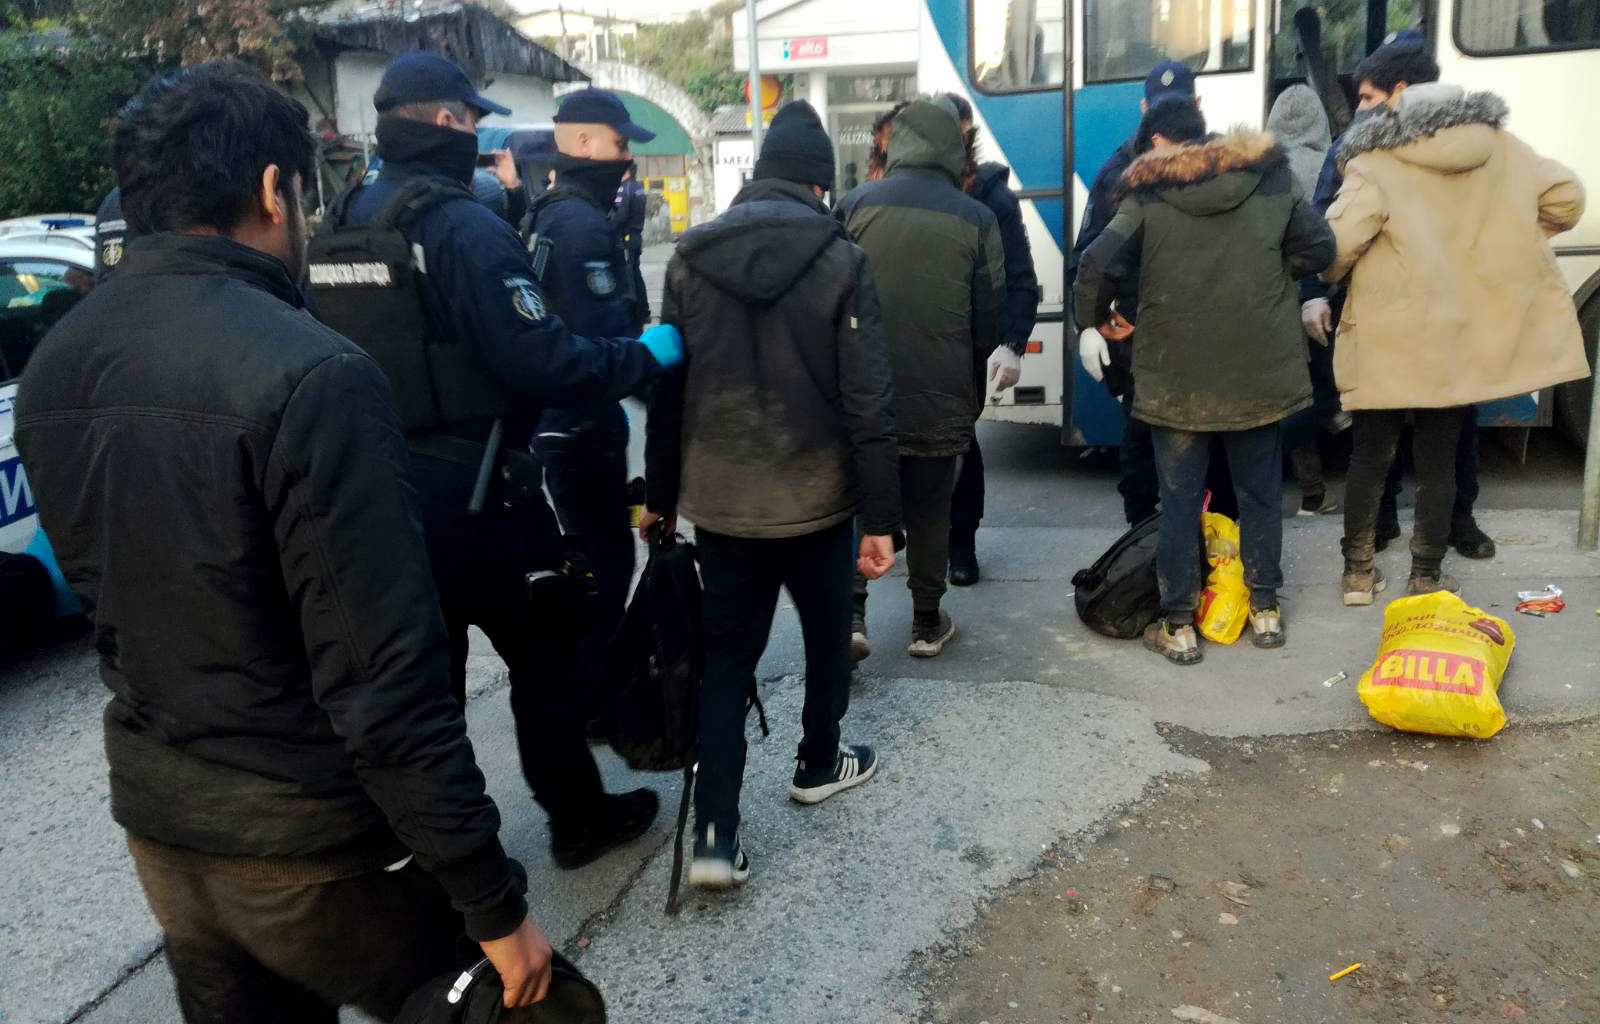 Tokom redovne akcije u Beogradu, pronađeno 90 ilegalnih migranata